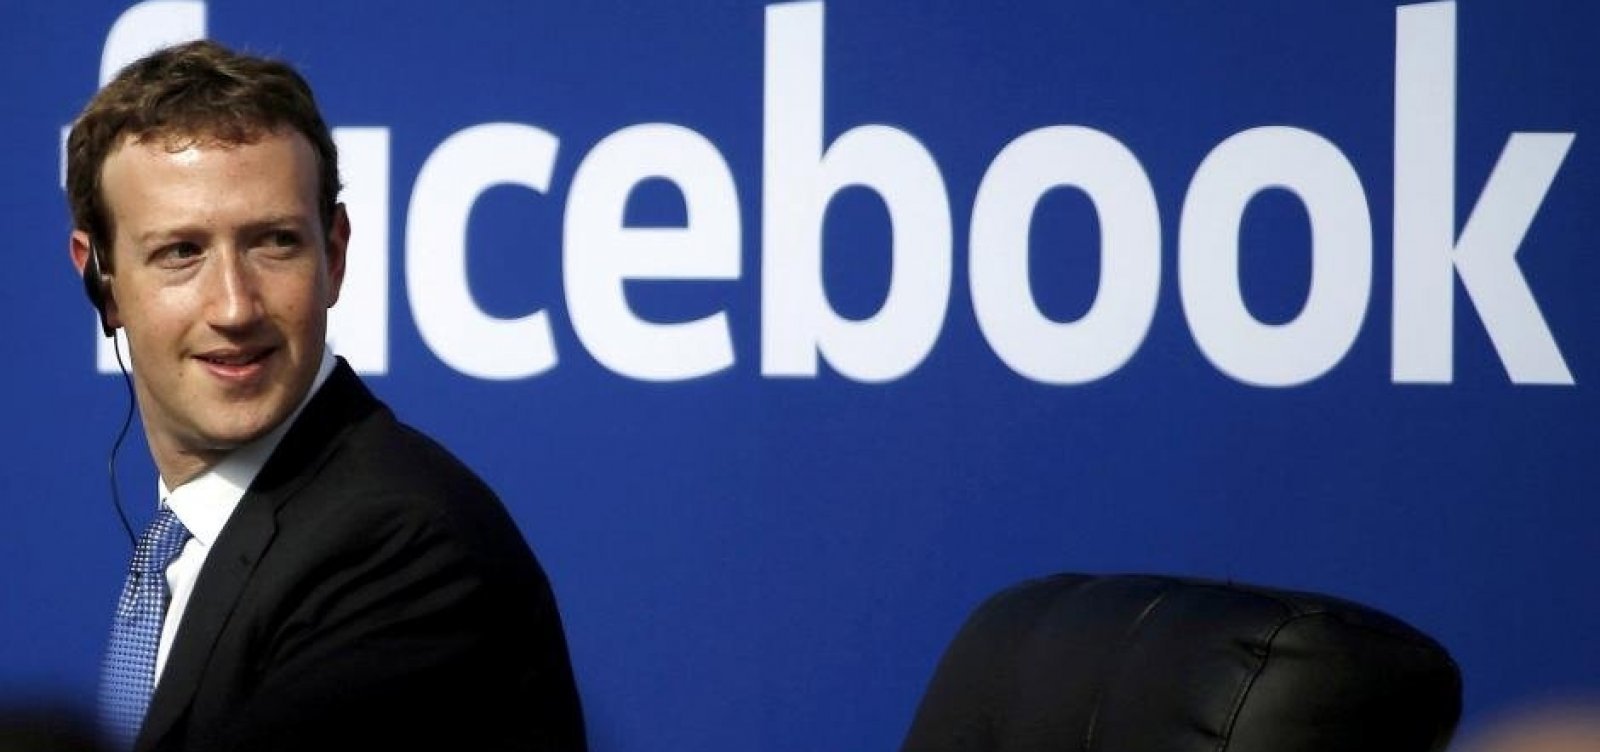 Facebook cedeu dados de usuários a grandes anunciantes, diz legislativo britânico